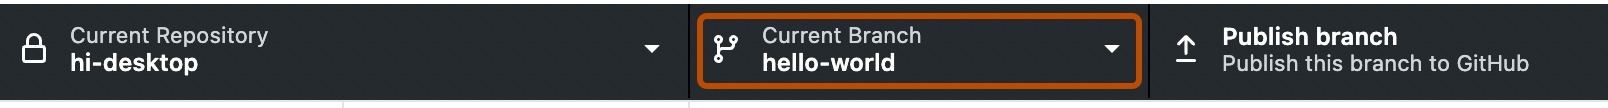 Снимок экрана: панель репозитория. Кнопка с меткой "Current Branch" (Текущая ветвь) со стрелкой вниз, обозначающая раскрывающееся меню, выделена оранжевым цветом.